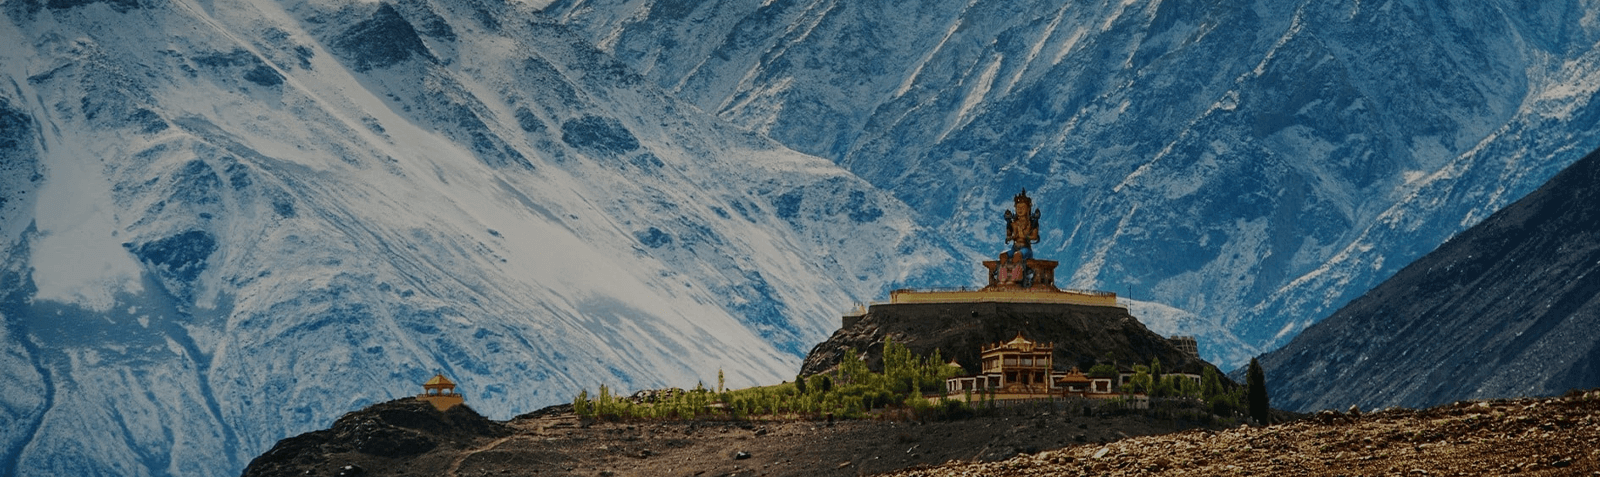 Leh Ladakh Srinagar Tour